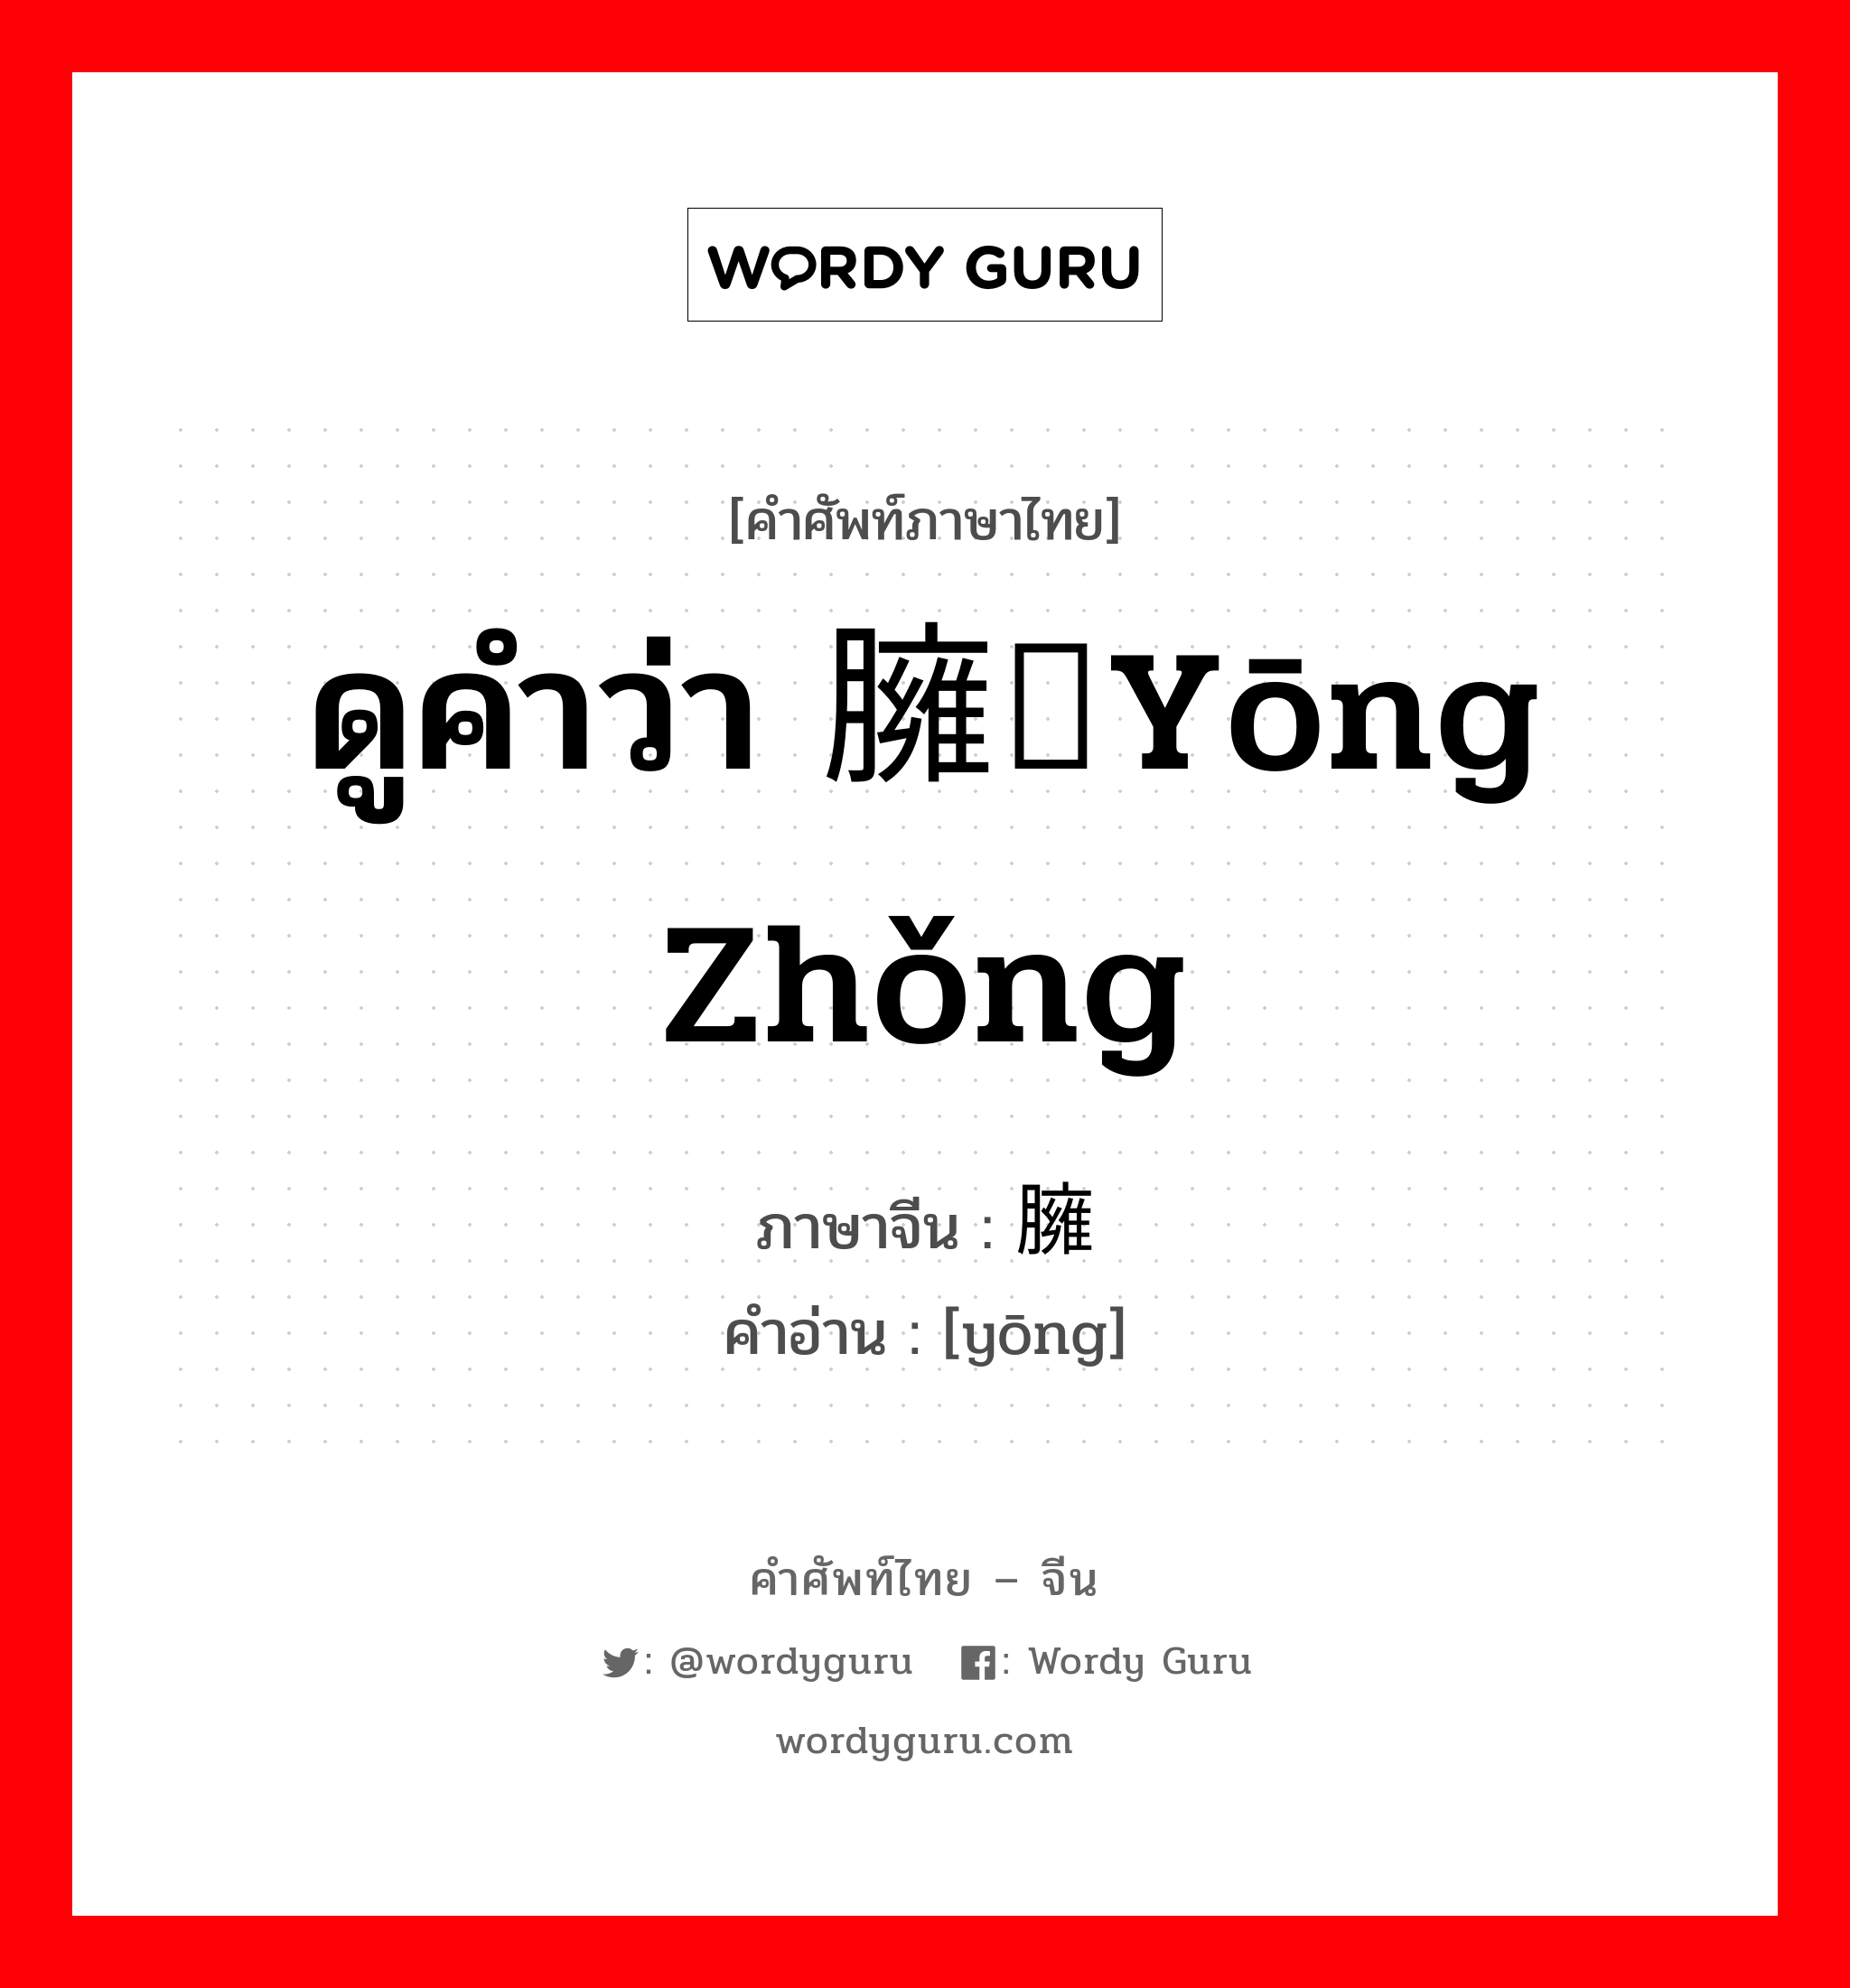 ดูคำว่า 臃肿yōng zhǒng ภาษาจีนคืออะไร, คำศัพท์ภาษาไทย - จีน ดูคำว่า 臃肿yōng zhǒng ภาษาจีน 臃 คำอ่าน [yōng]